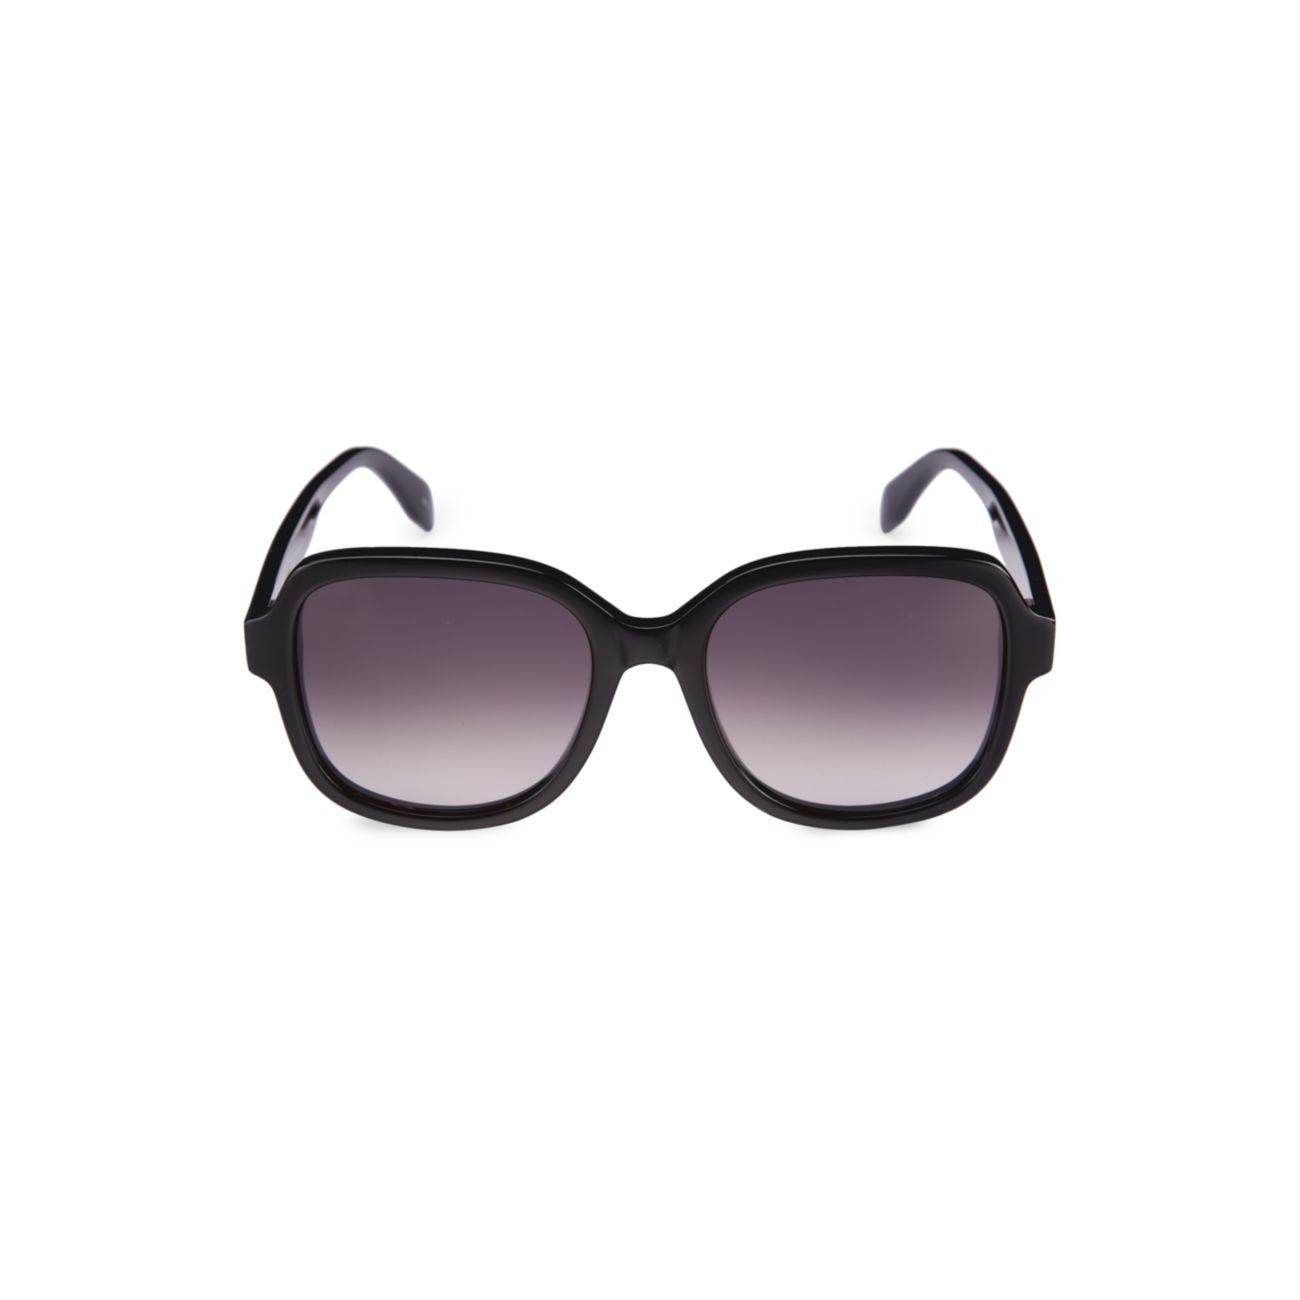 Квадратные солнцезащитные очки Romance 56 мм Alexander McQueen